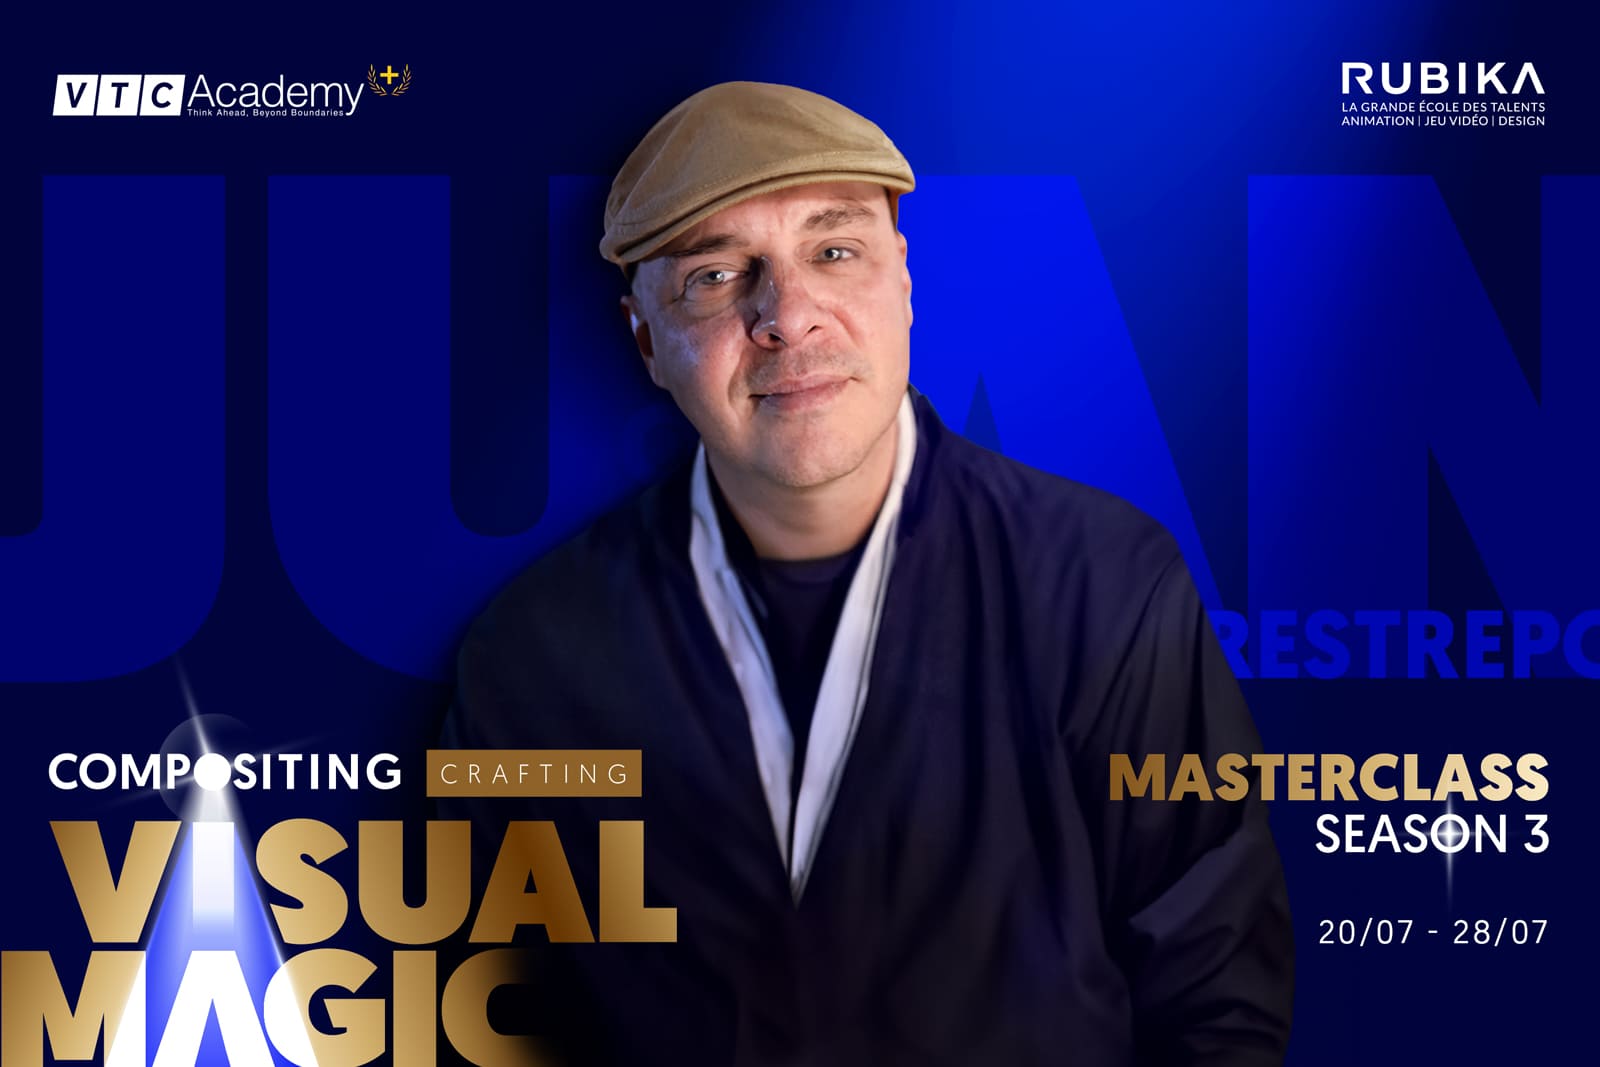 Masterclass mùa 3 – Tuần lễ học cùng chuyên gia quốc tế Rubika đã chính thức quay trở lại với chủ đề “Compositing: Crafting visual magic”